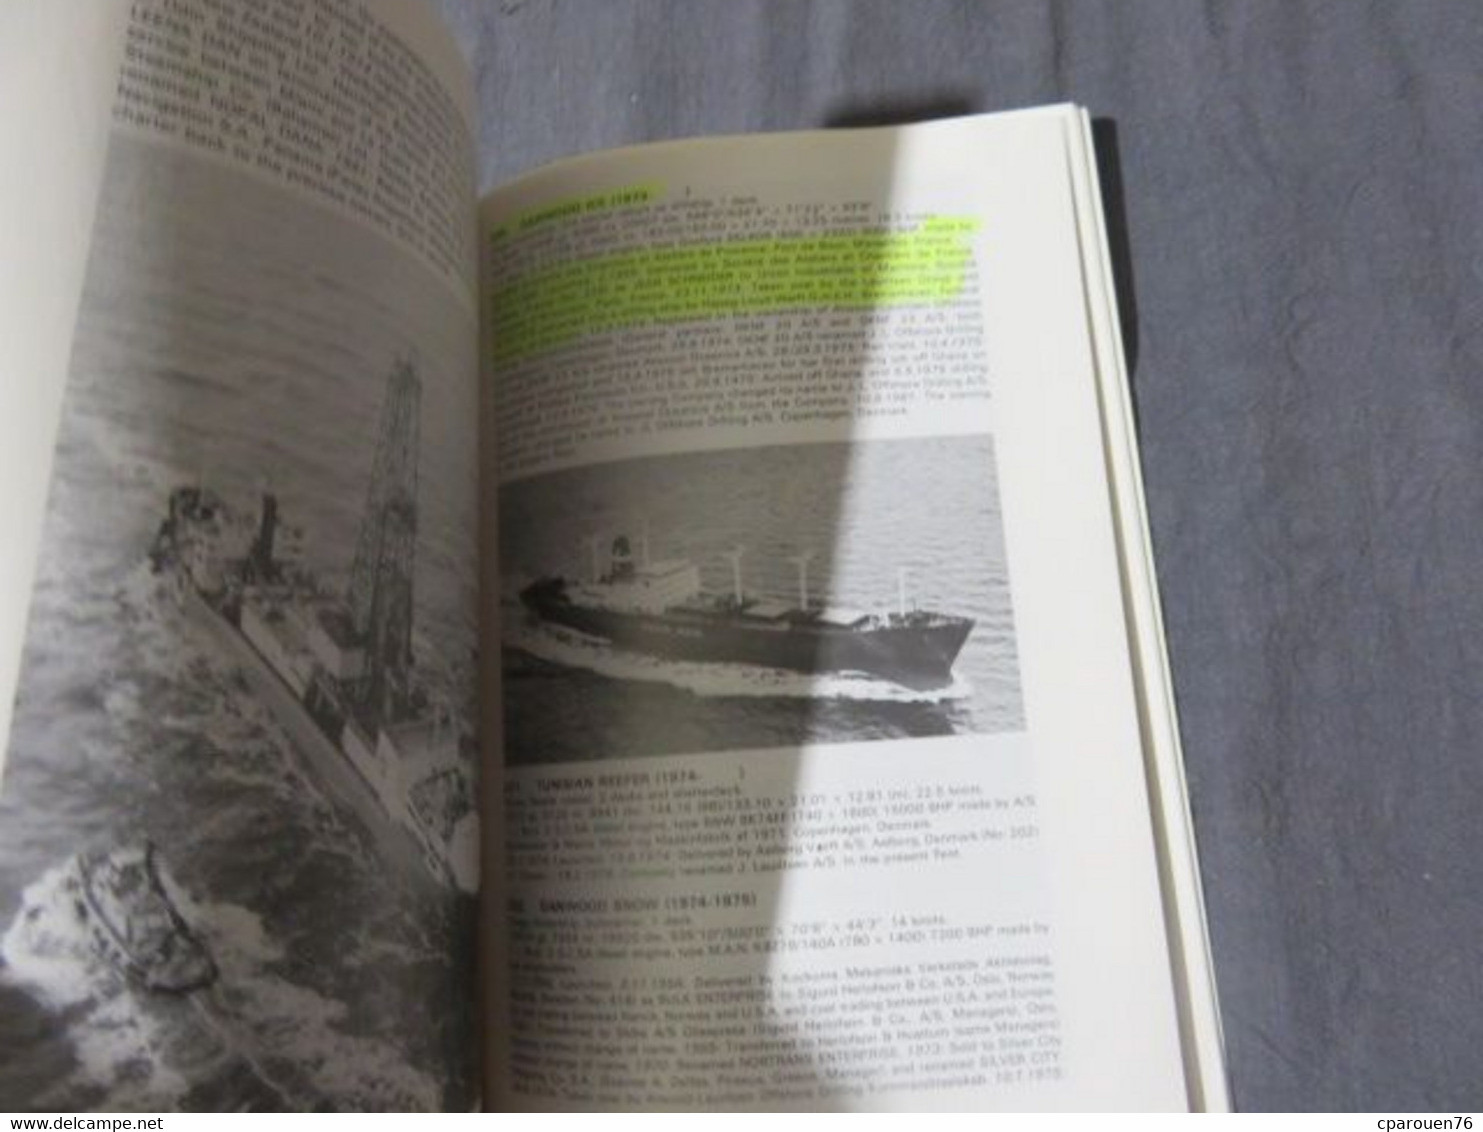 Livre Bateaux Transport Maritime J. Lauritzen 1884-1984 Thorsoe, S. Edité Par World Ship Society, 1984, 1St Edtion. (198 - 1950-Maintenant